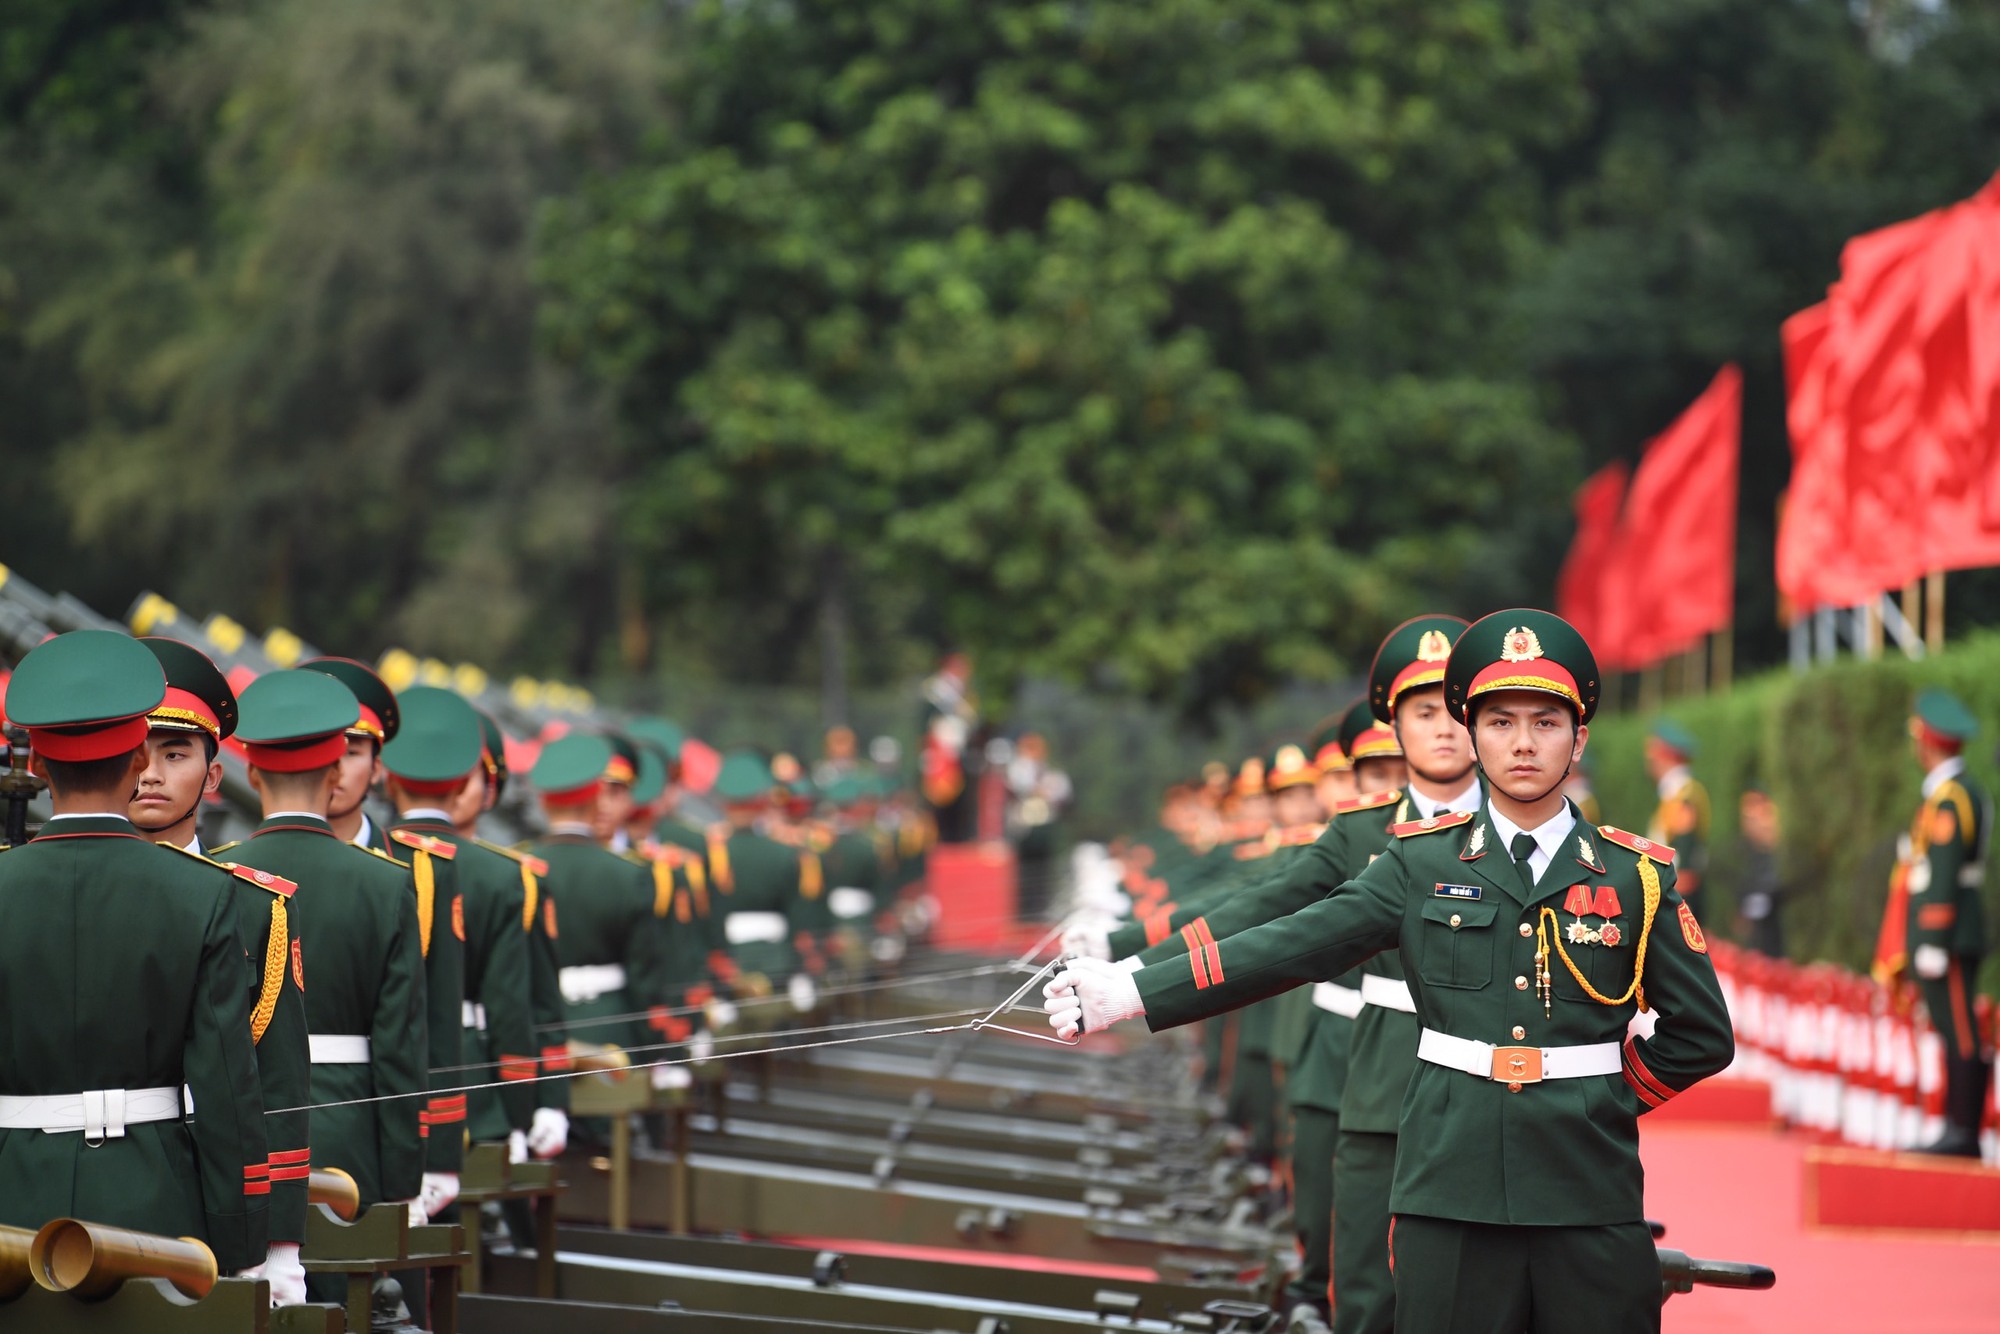 Cận cảnh nghi thức bắn 21 phát đại bác chào mừng Tổng bí thư, Chủ tịch Trung Quốc  - Ảnh 3.